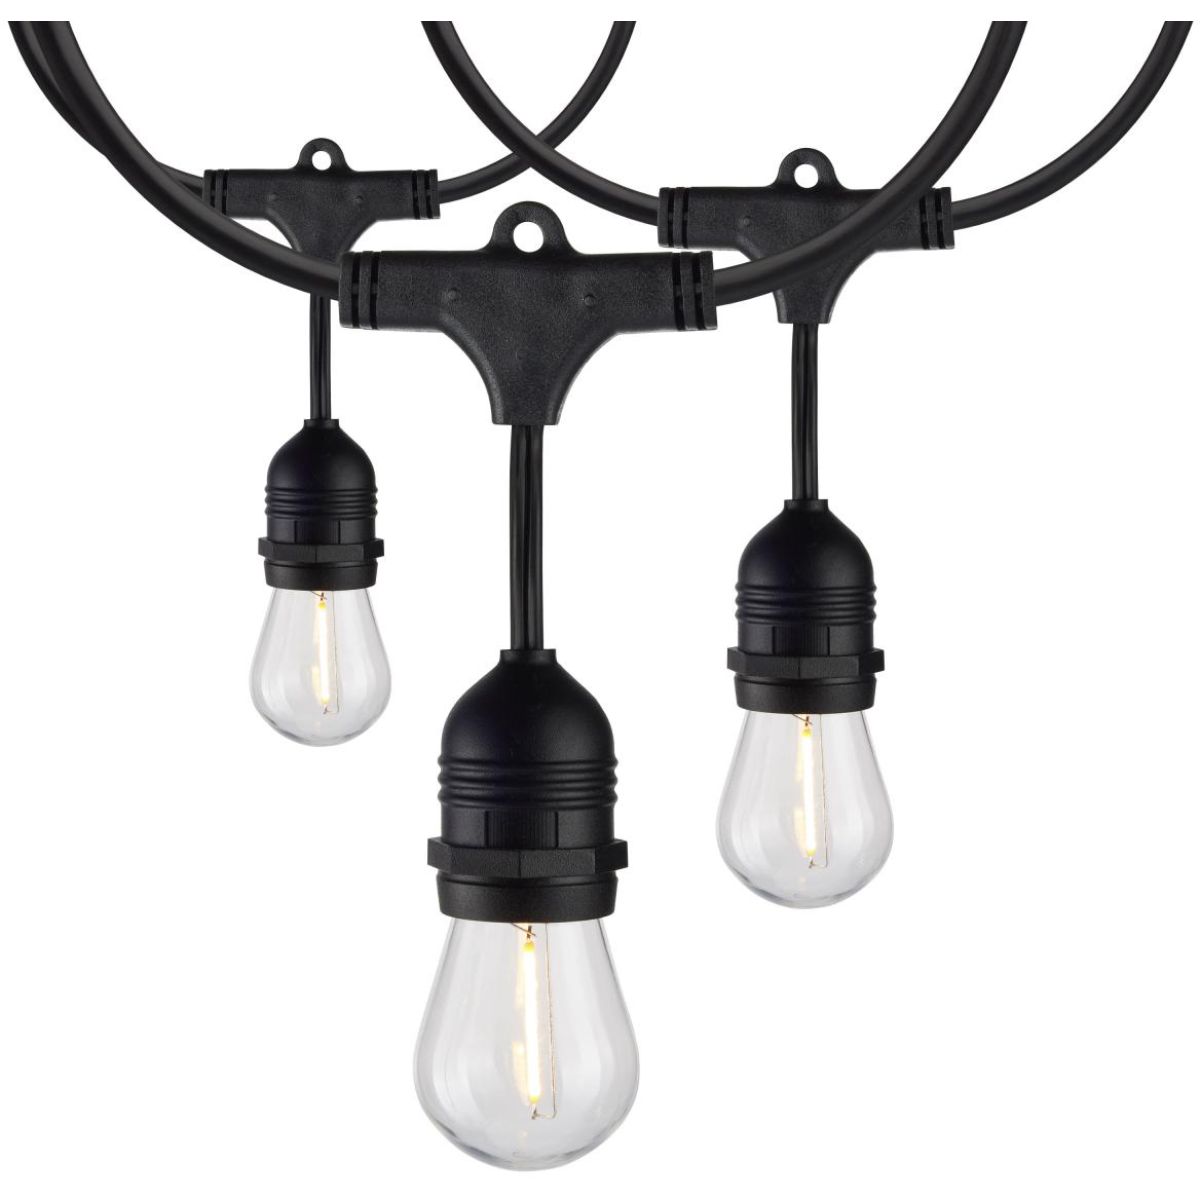 60 Feet Commercial LED String Light, 24 S14 bulbs, Warm white 2200K, Indoor/Outdoor, 120V